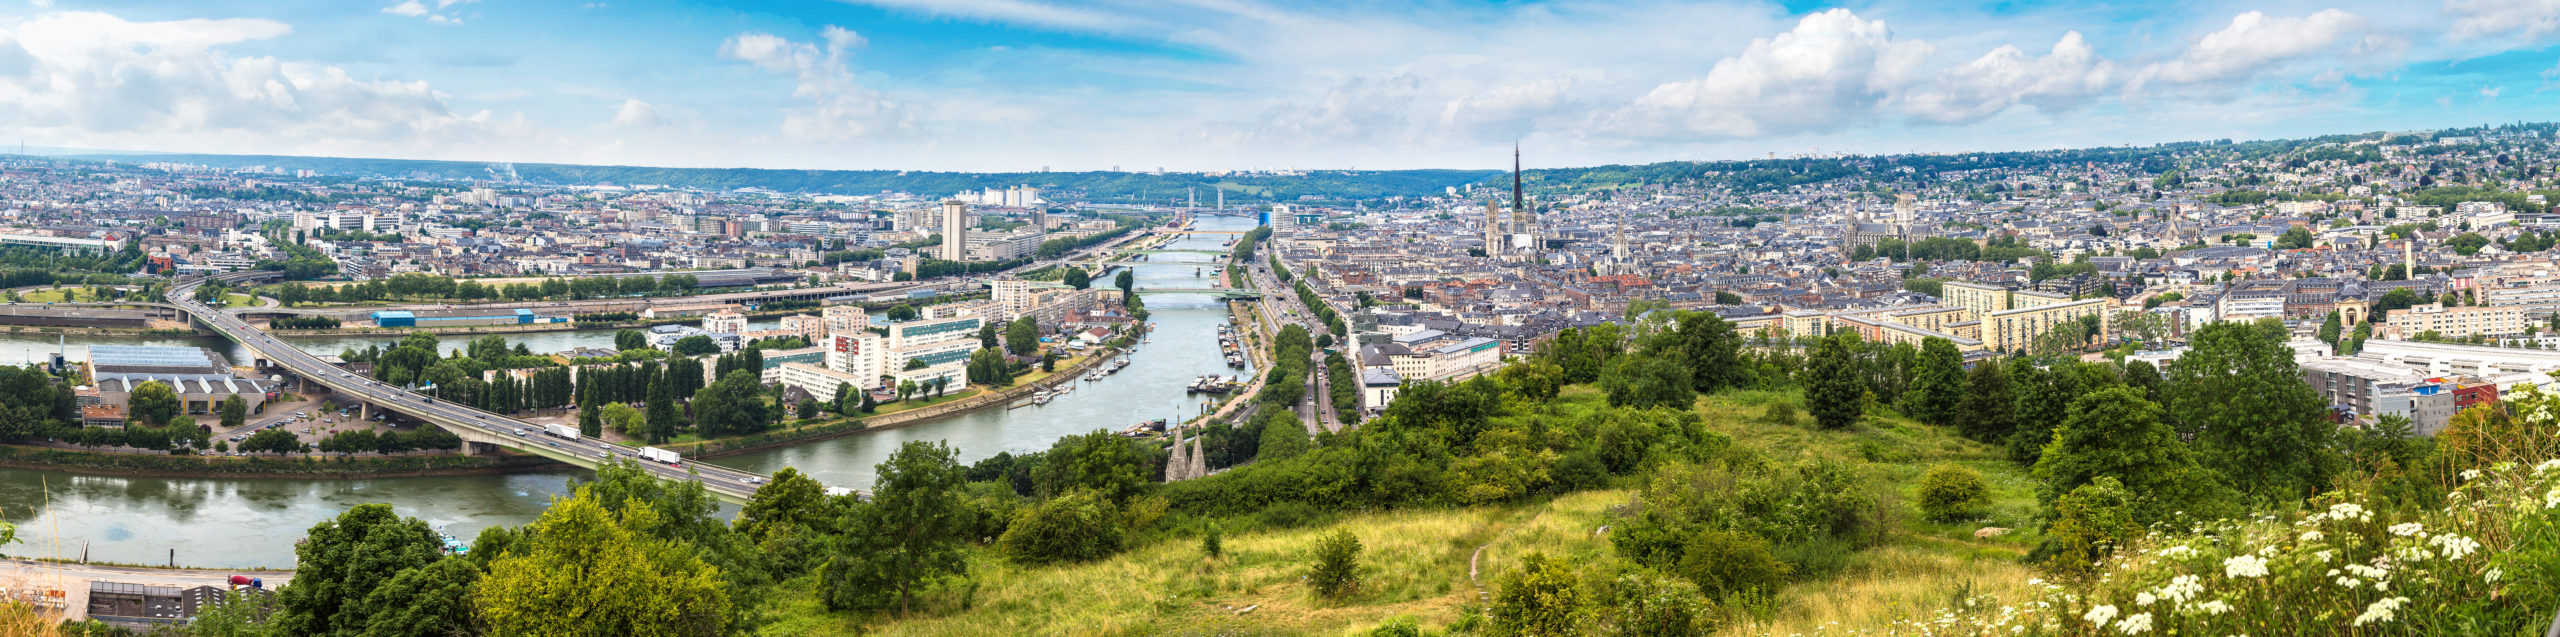 Rouen, France - City View